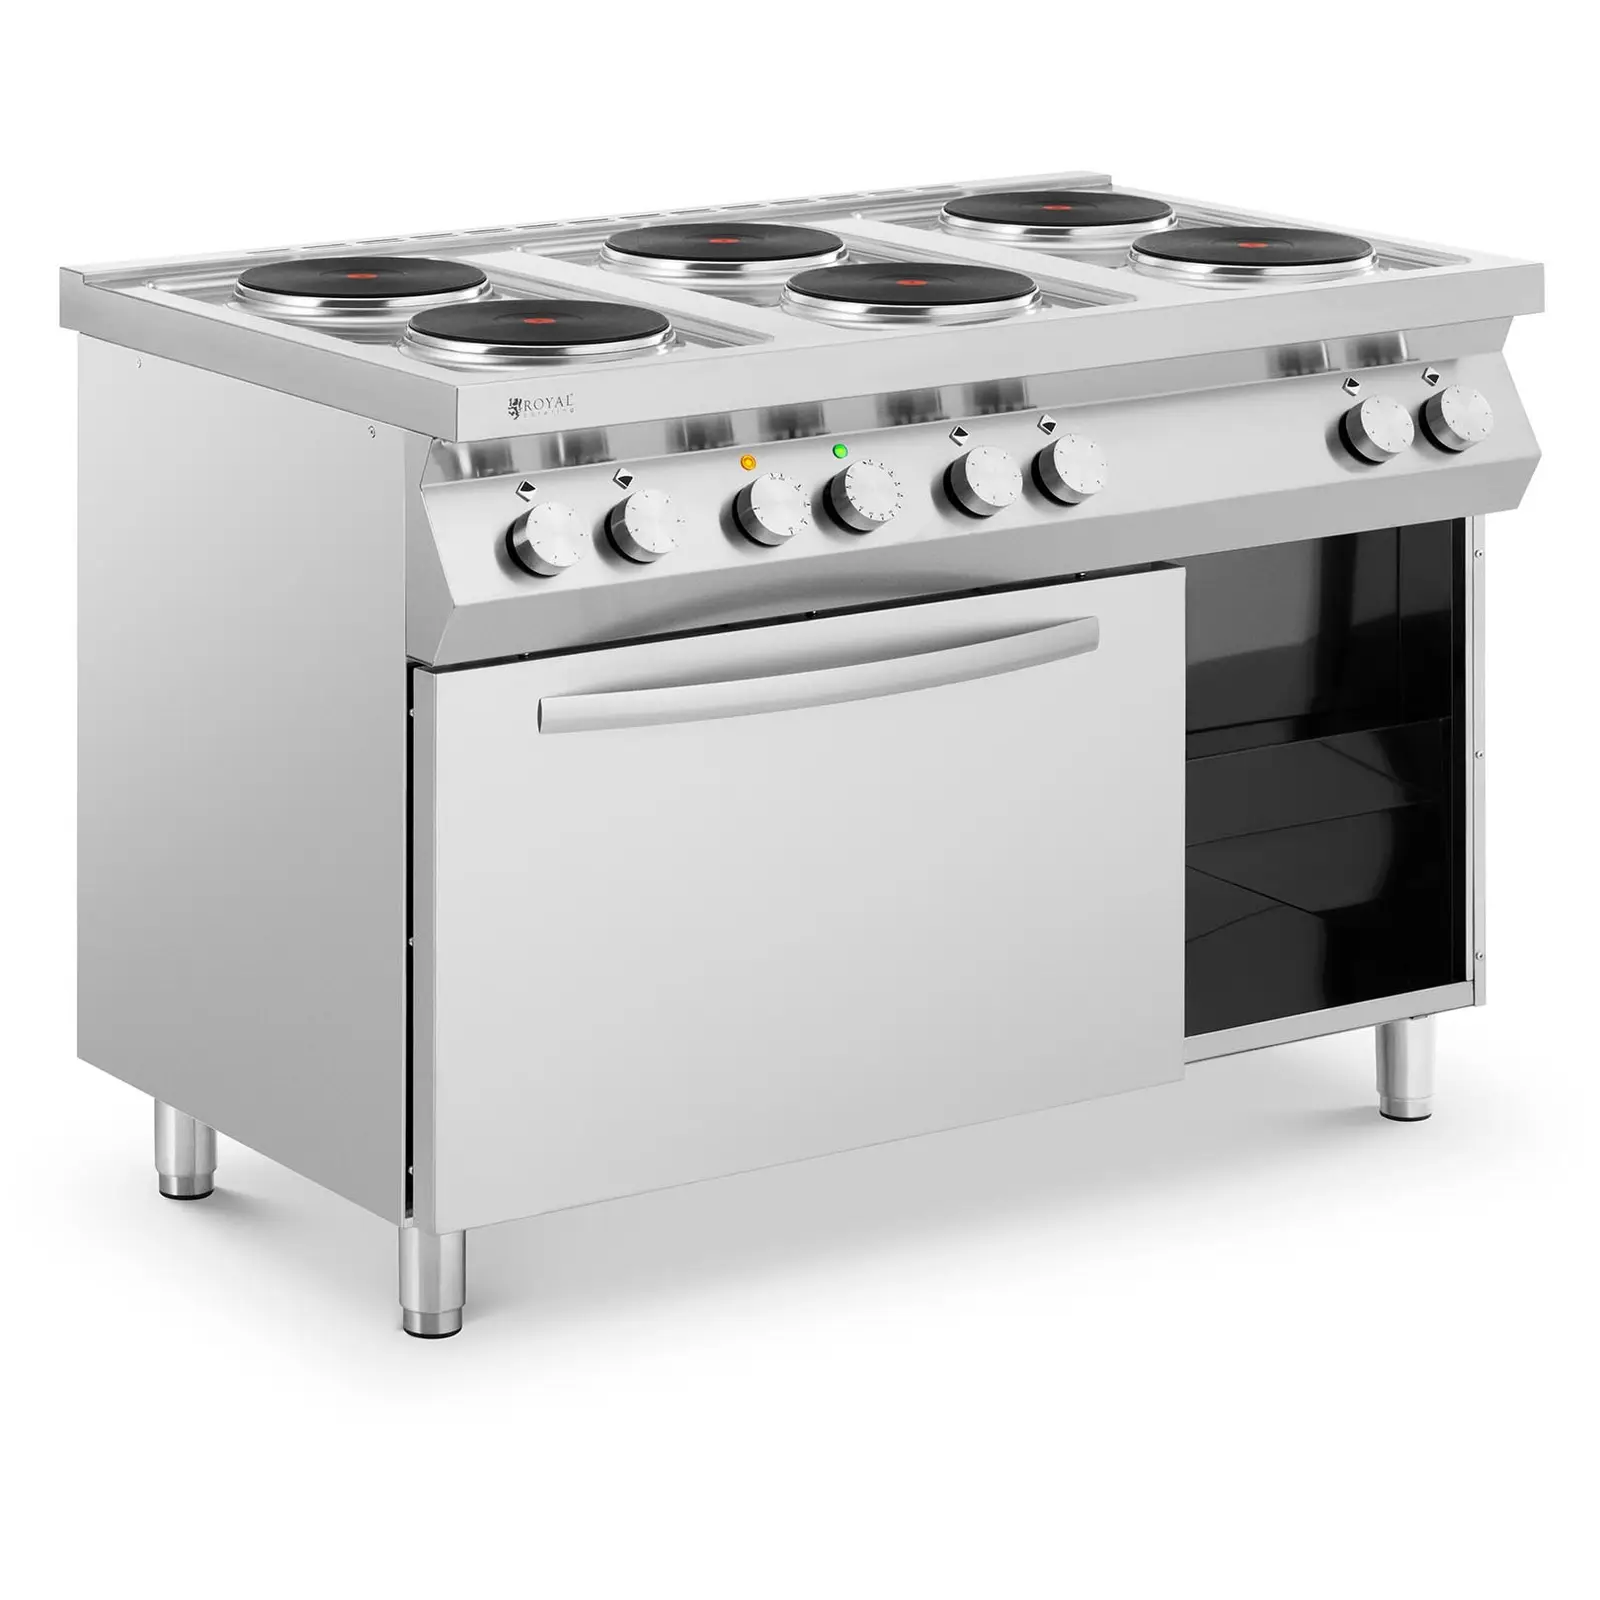 Cucina elettrica professionale - 15600 W - Piano - cottura con 6 fornelli - Con forno a convezione - Armadietto - Royal Catering